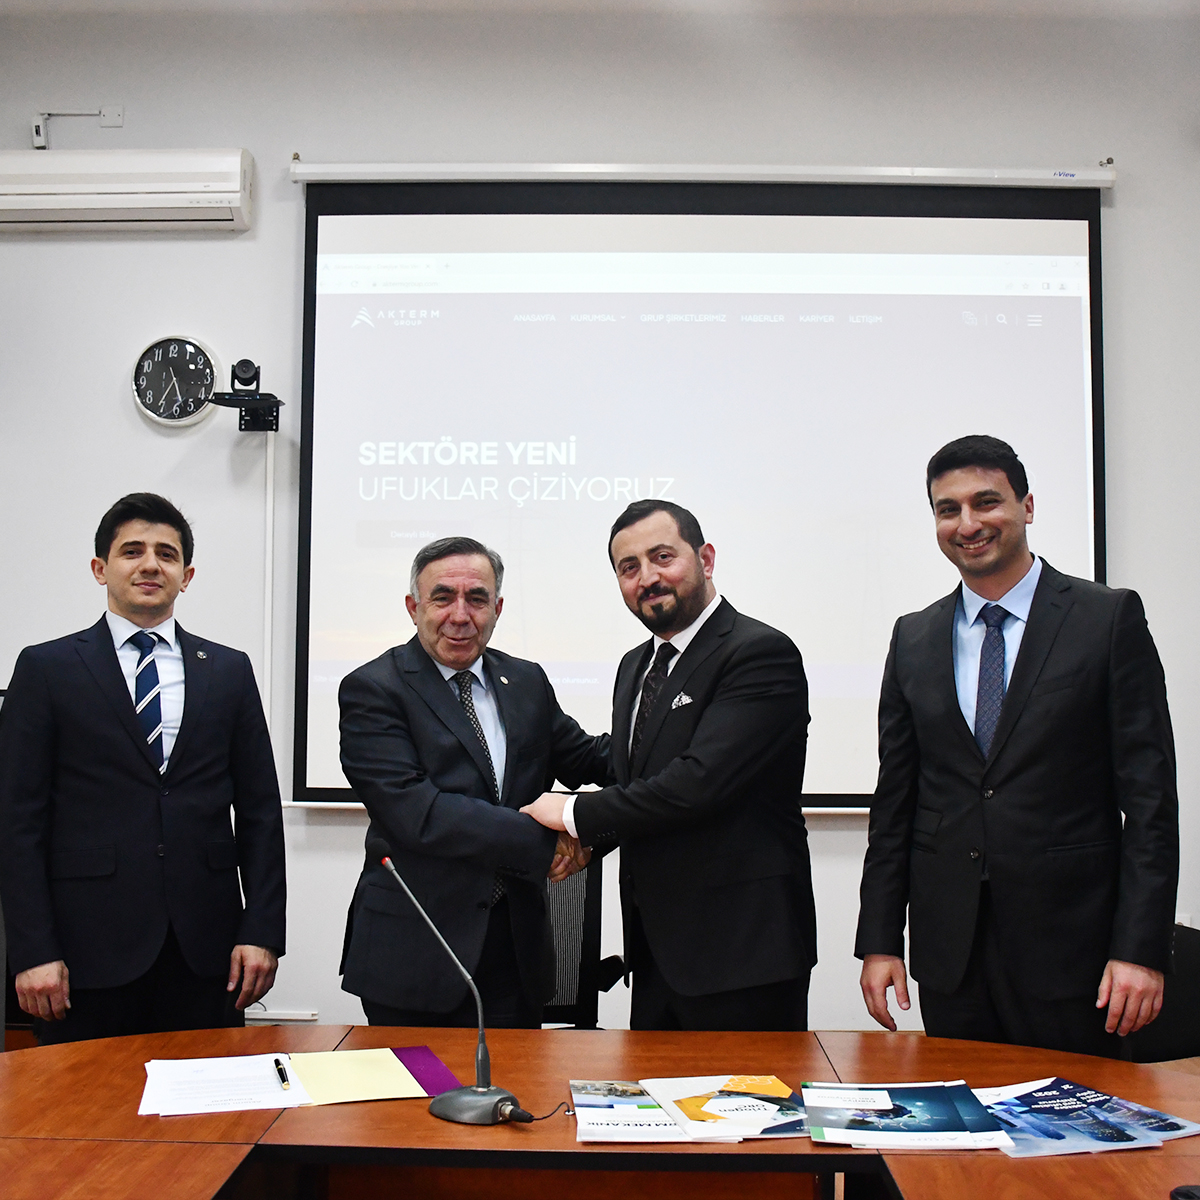 Akterm Group olarak Azerbaycan temsilciliği için anlaşma imazaladık – Akterm Group Azərbaycan